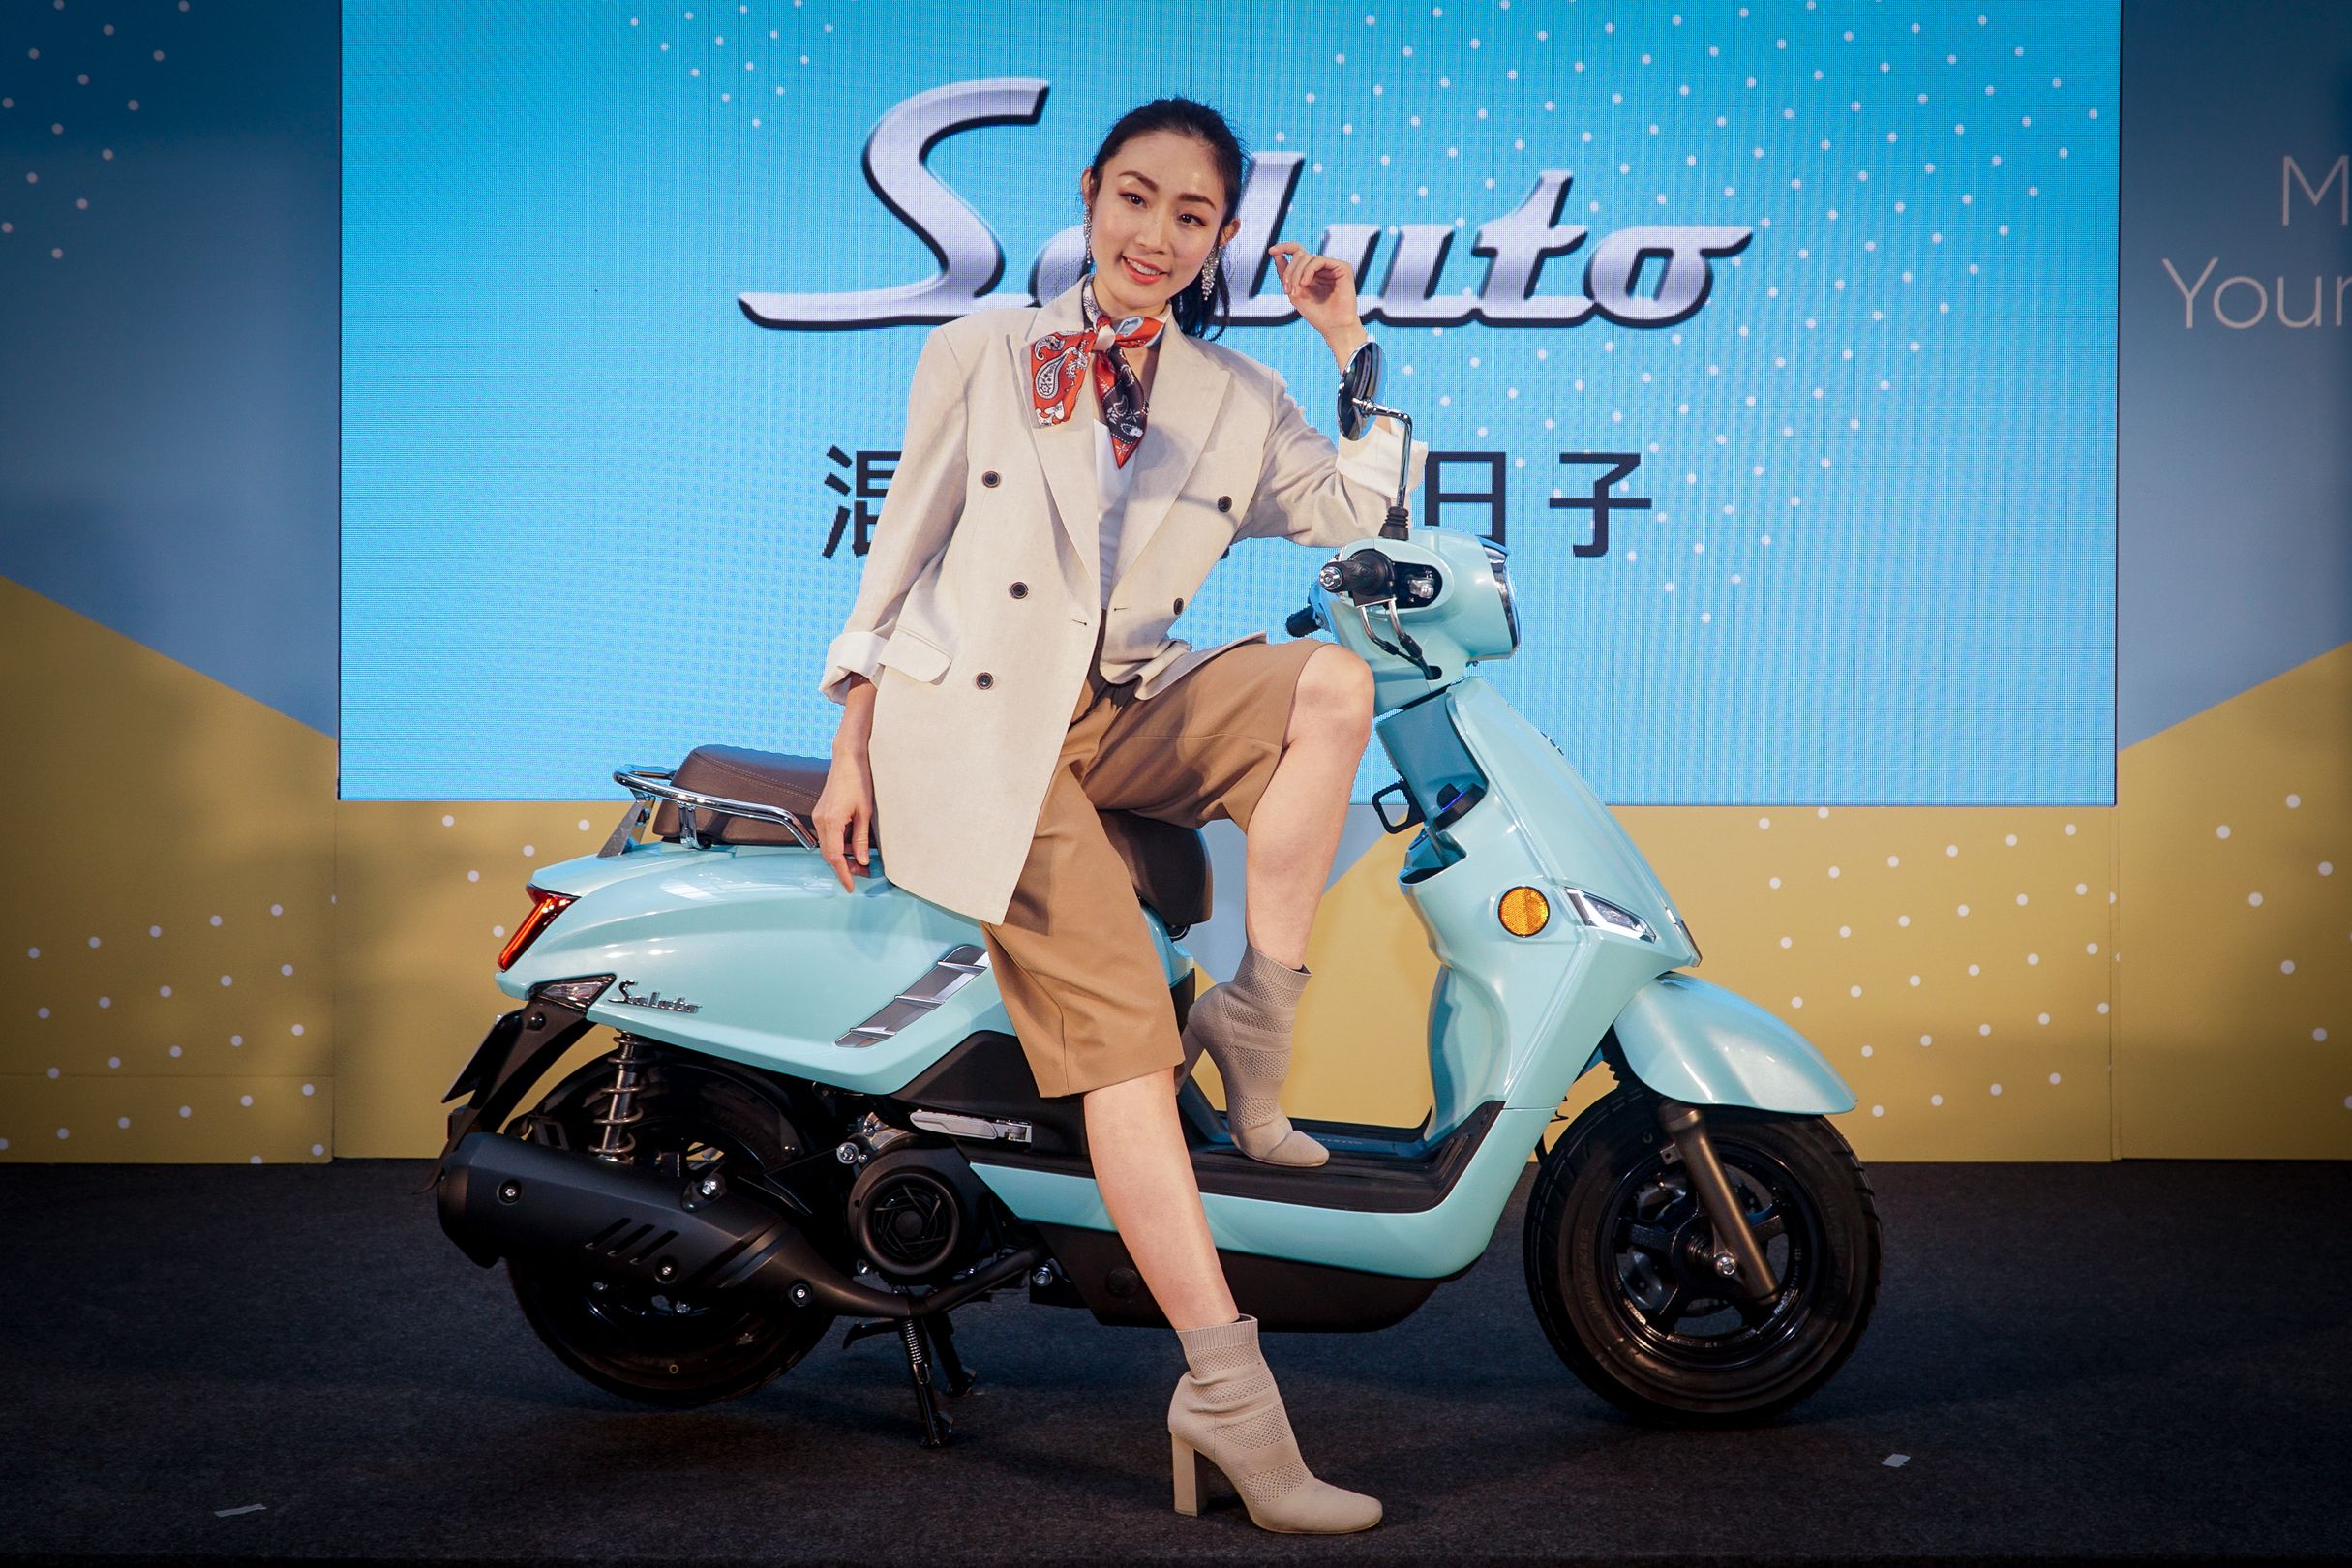 今年 2 月上市的 Suzuki Saluto 推出僅兩個月就已經累積近 1,100 台的銷售成績，與去年同期銷售數量對比，台鈴 Suzuki 成長了 132%。